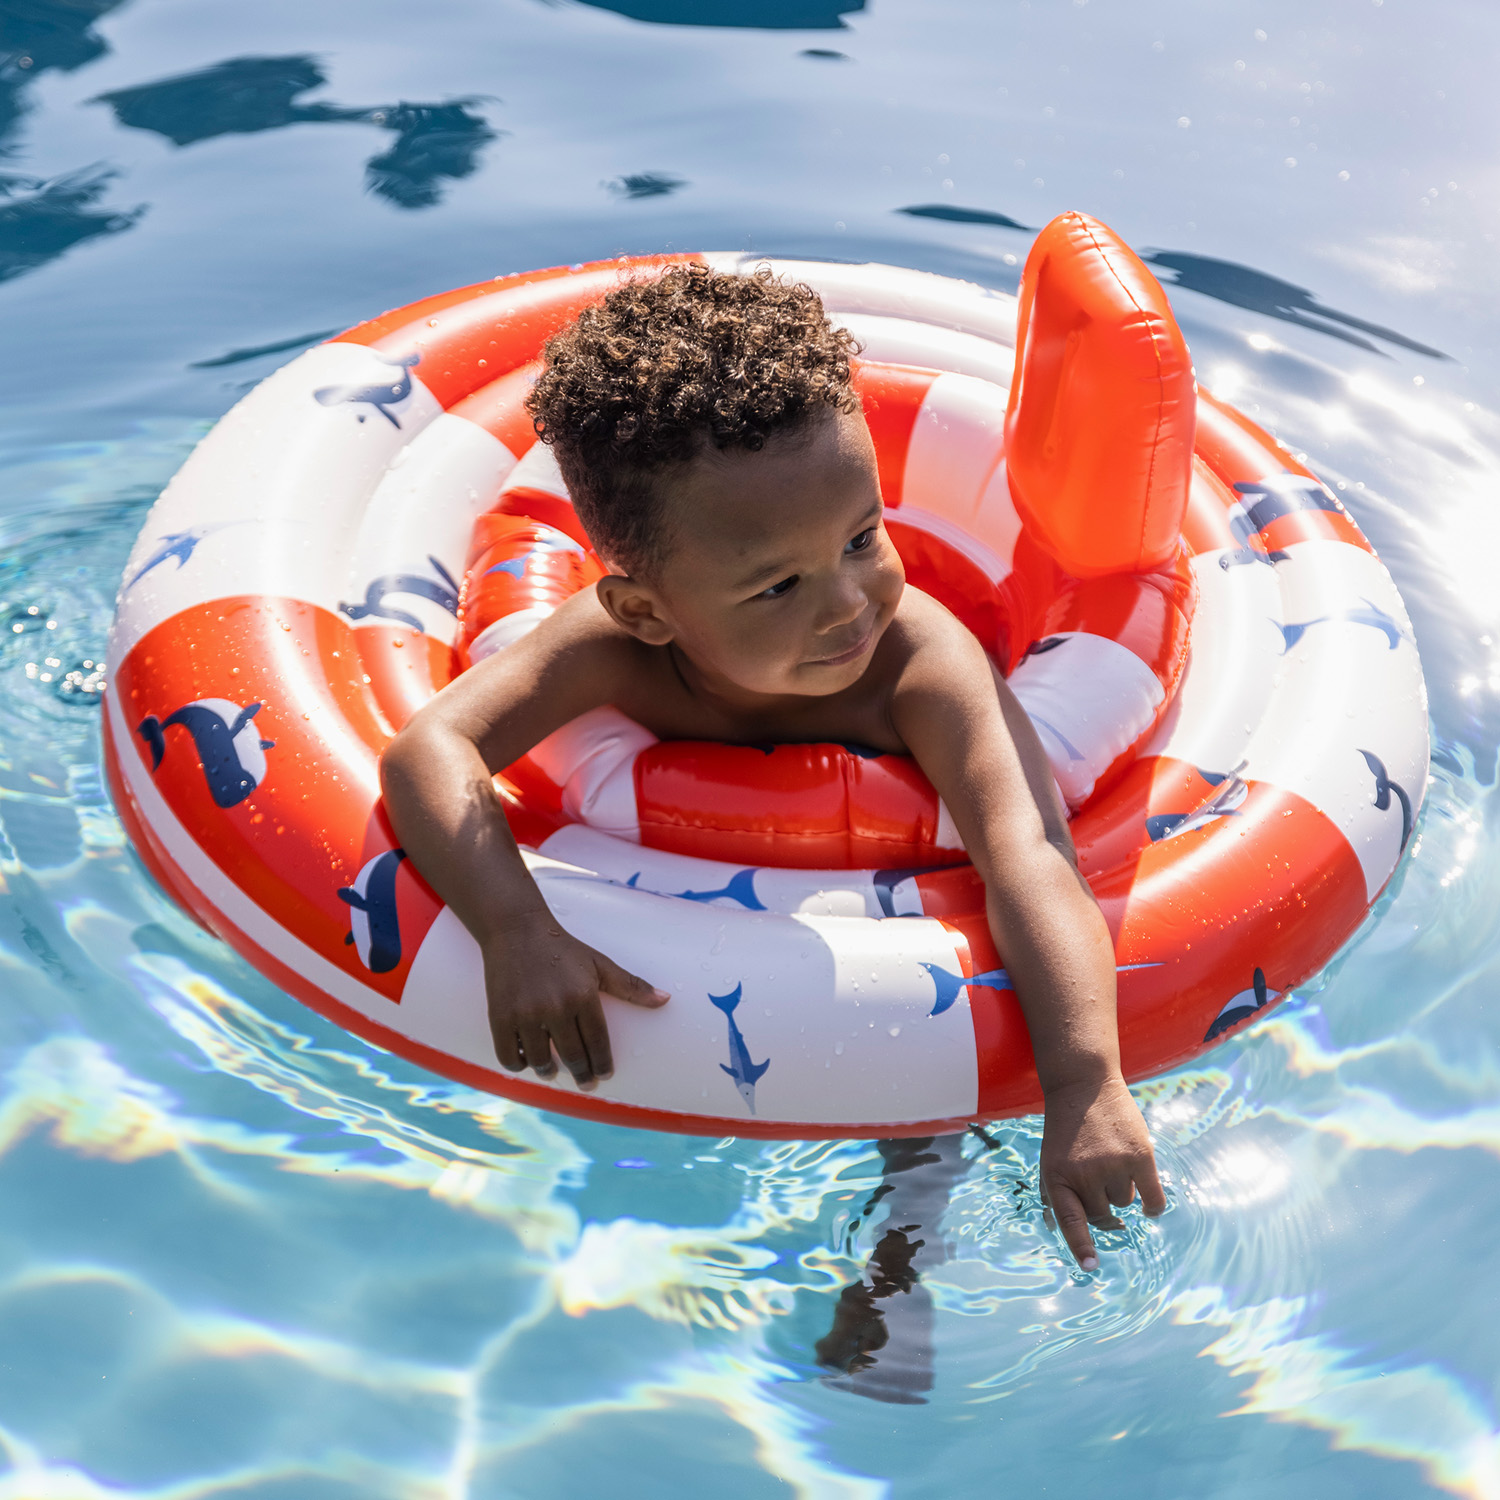 Swim Essentials | Baby-Schwimmsitz 0-1 Jahre | Red White Whale